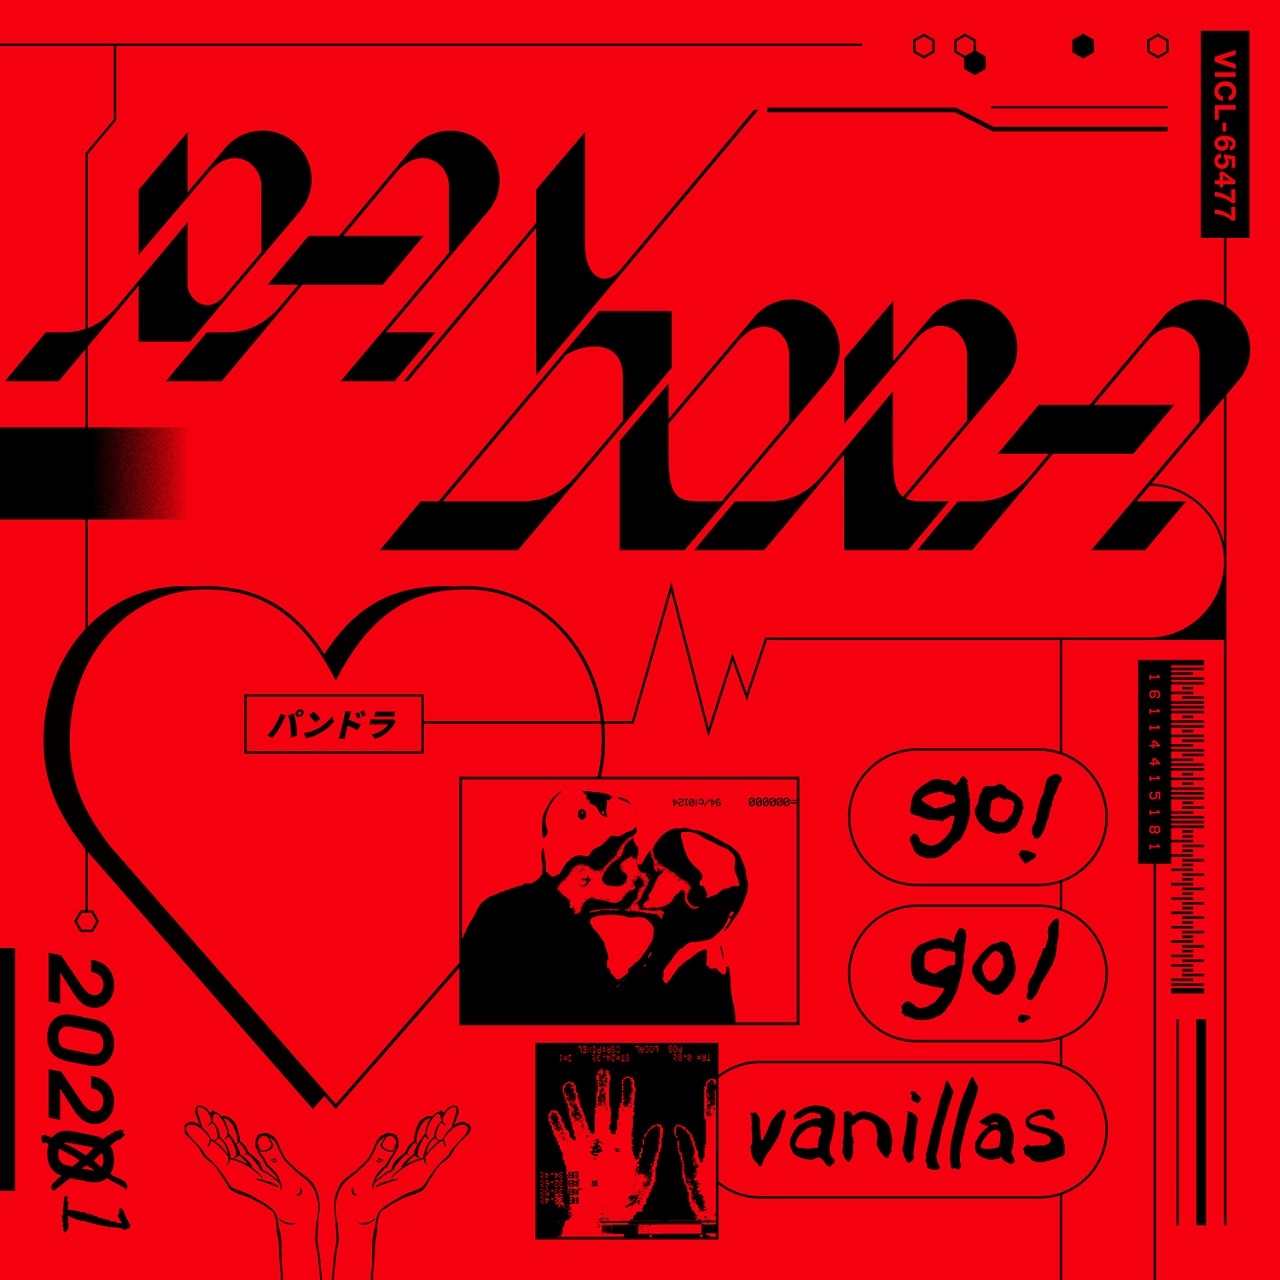 Go Go Vanillas ニューアルバム Pandora 魅惑のアートワーク 限定盤の特殊仕様公開 Spice エンタメ特化型情報メディア スパイス